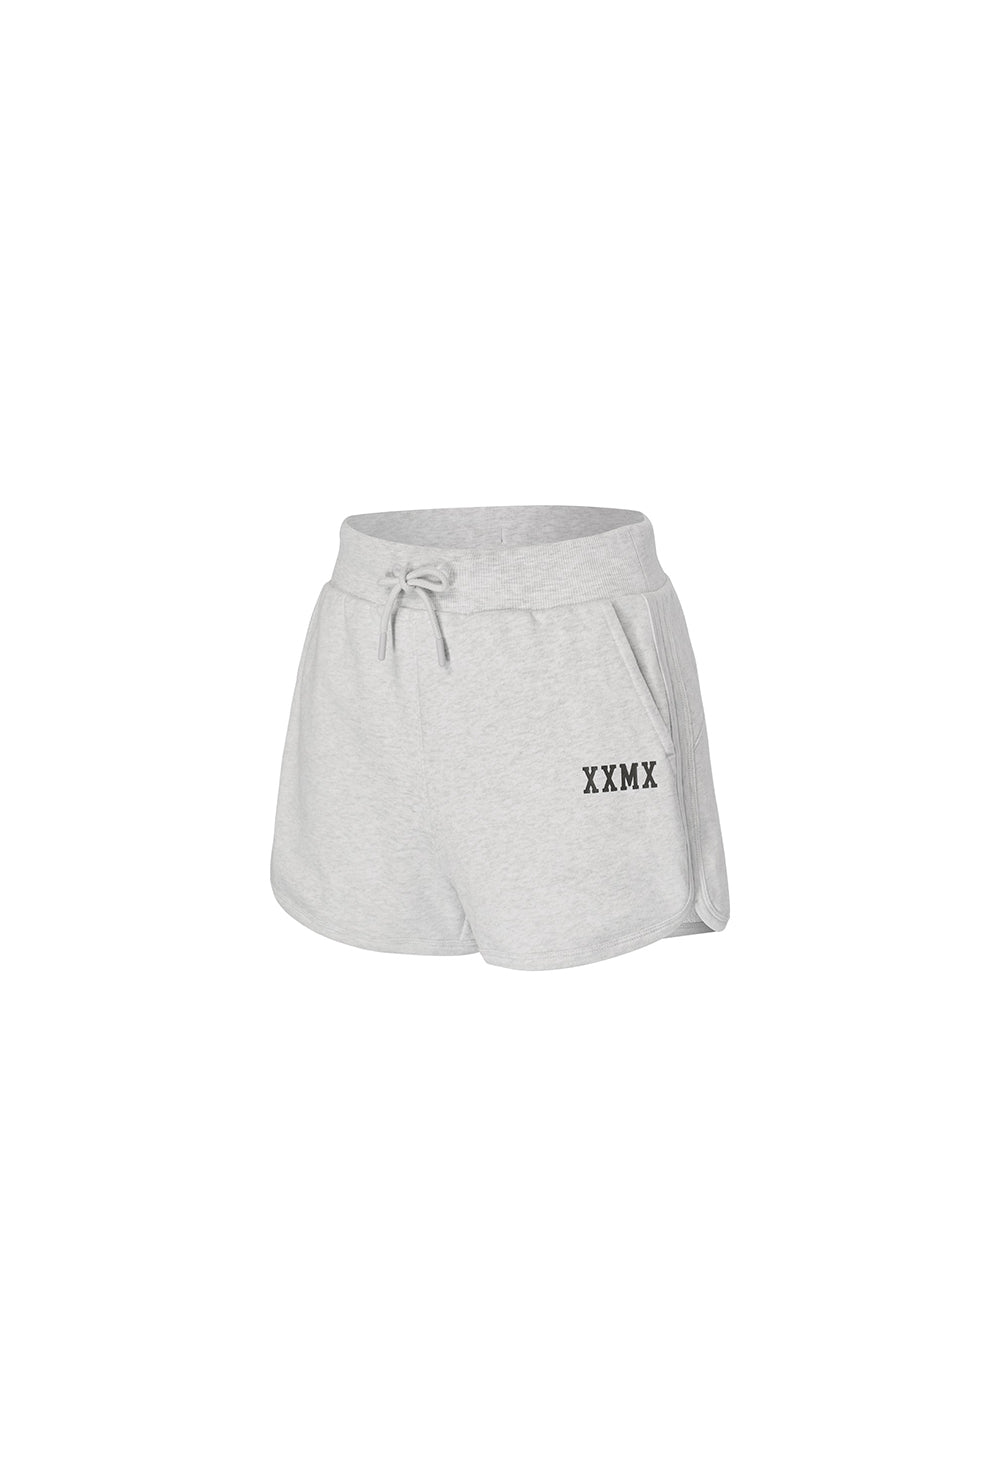 XXMX Daily Cotton Shorts - Light Melange